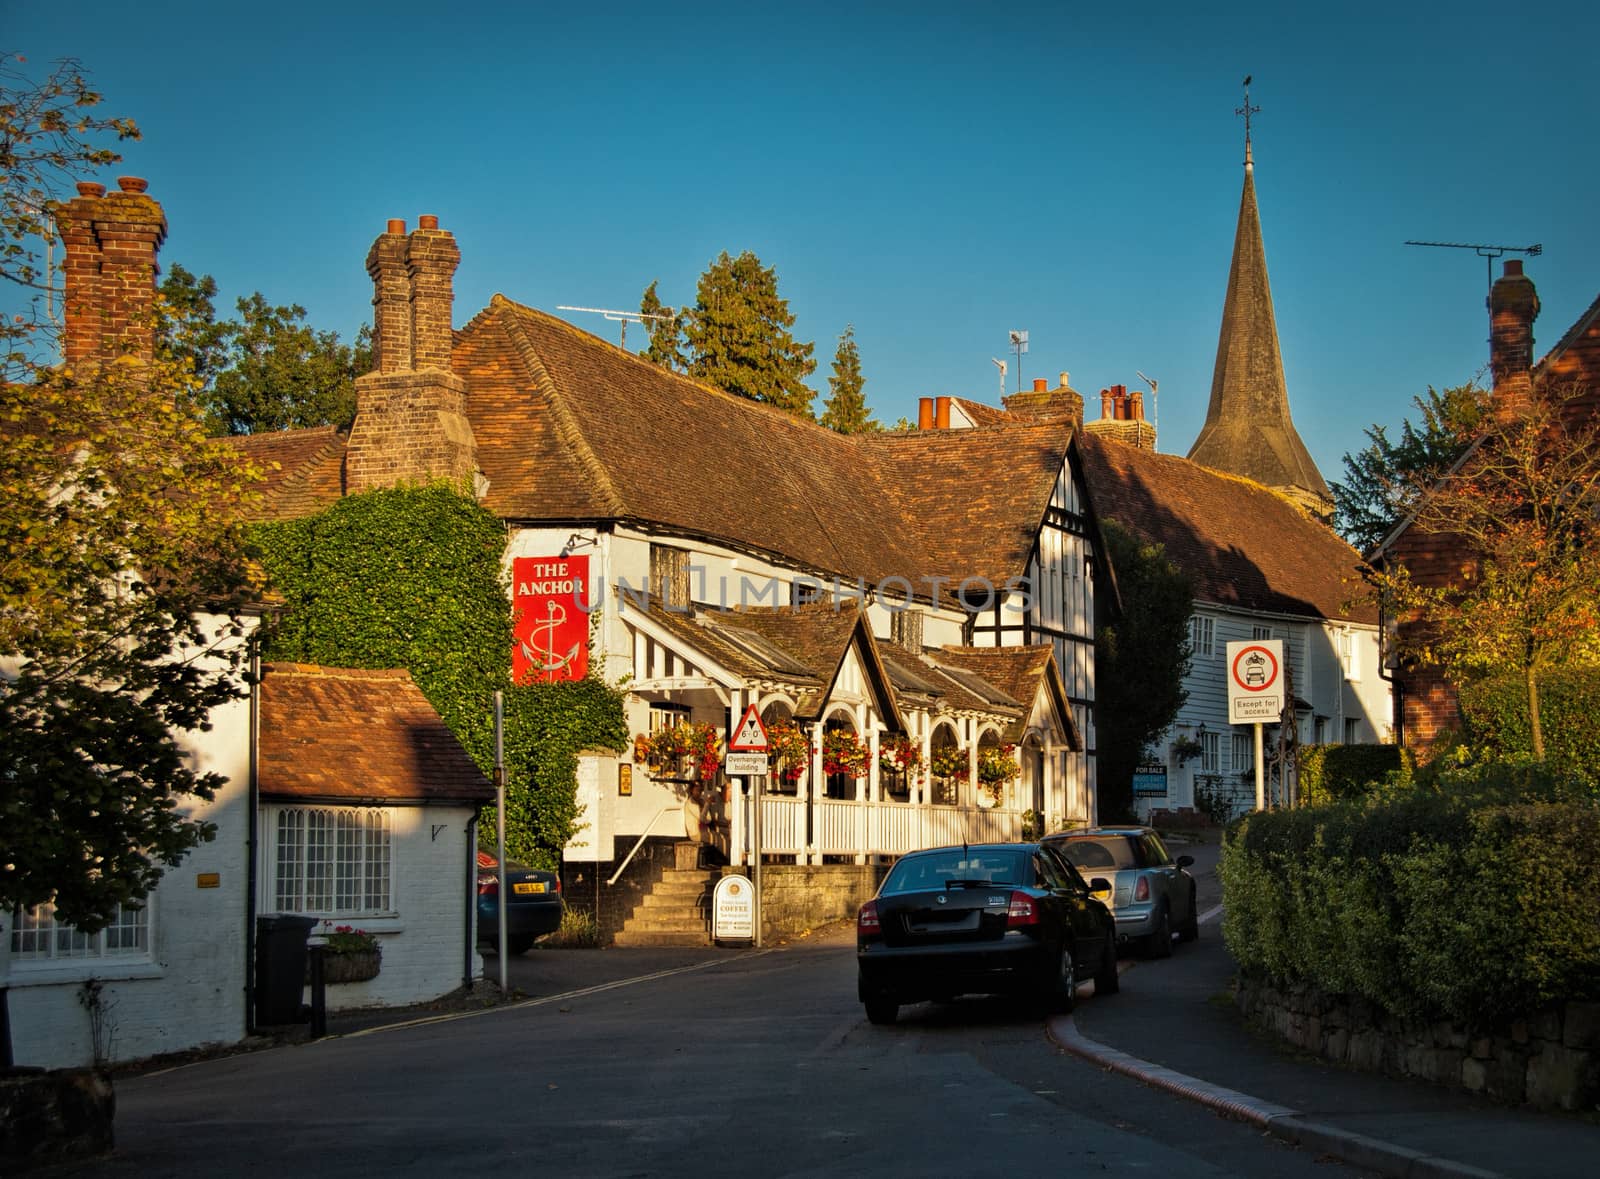 The village of Hartfield in Sussex, at sundown